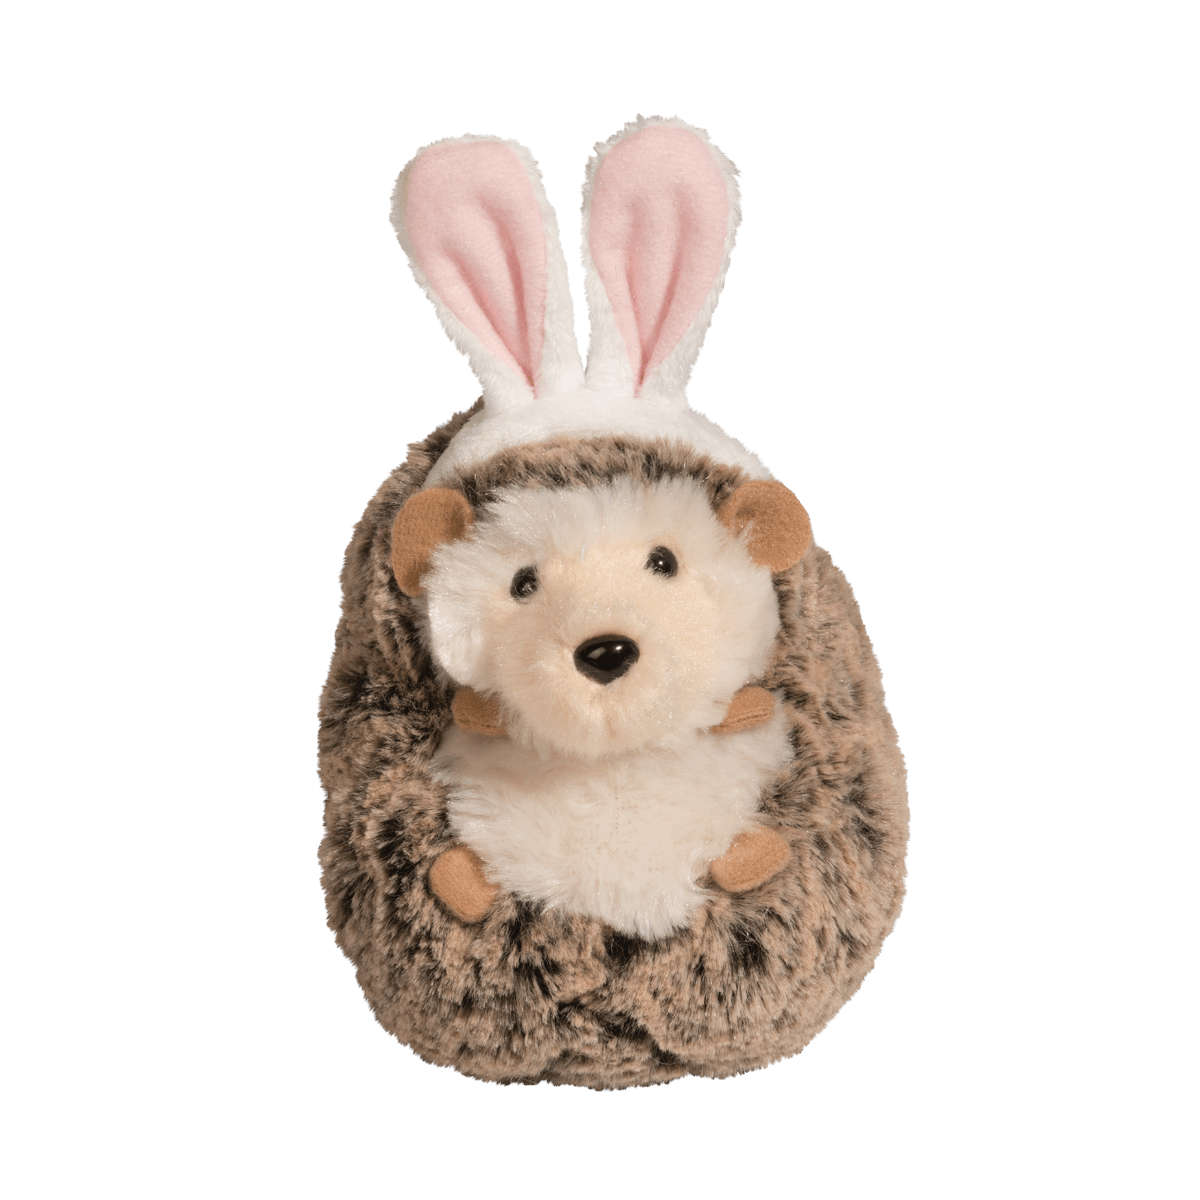 Douglas Spunky Hedgehog with Bunny Ears